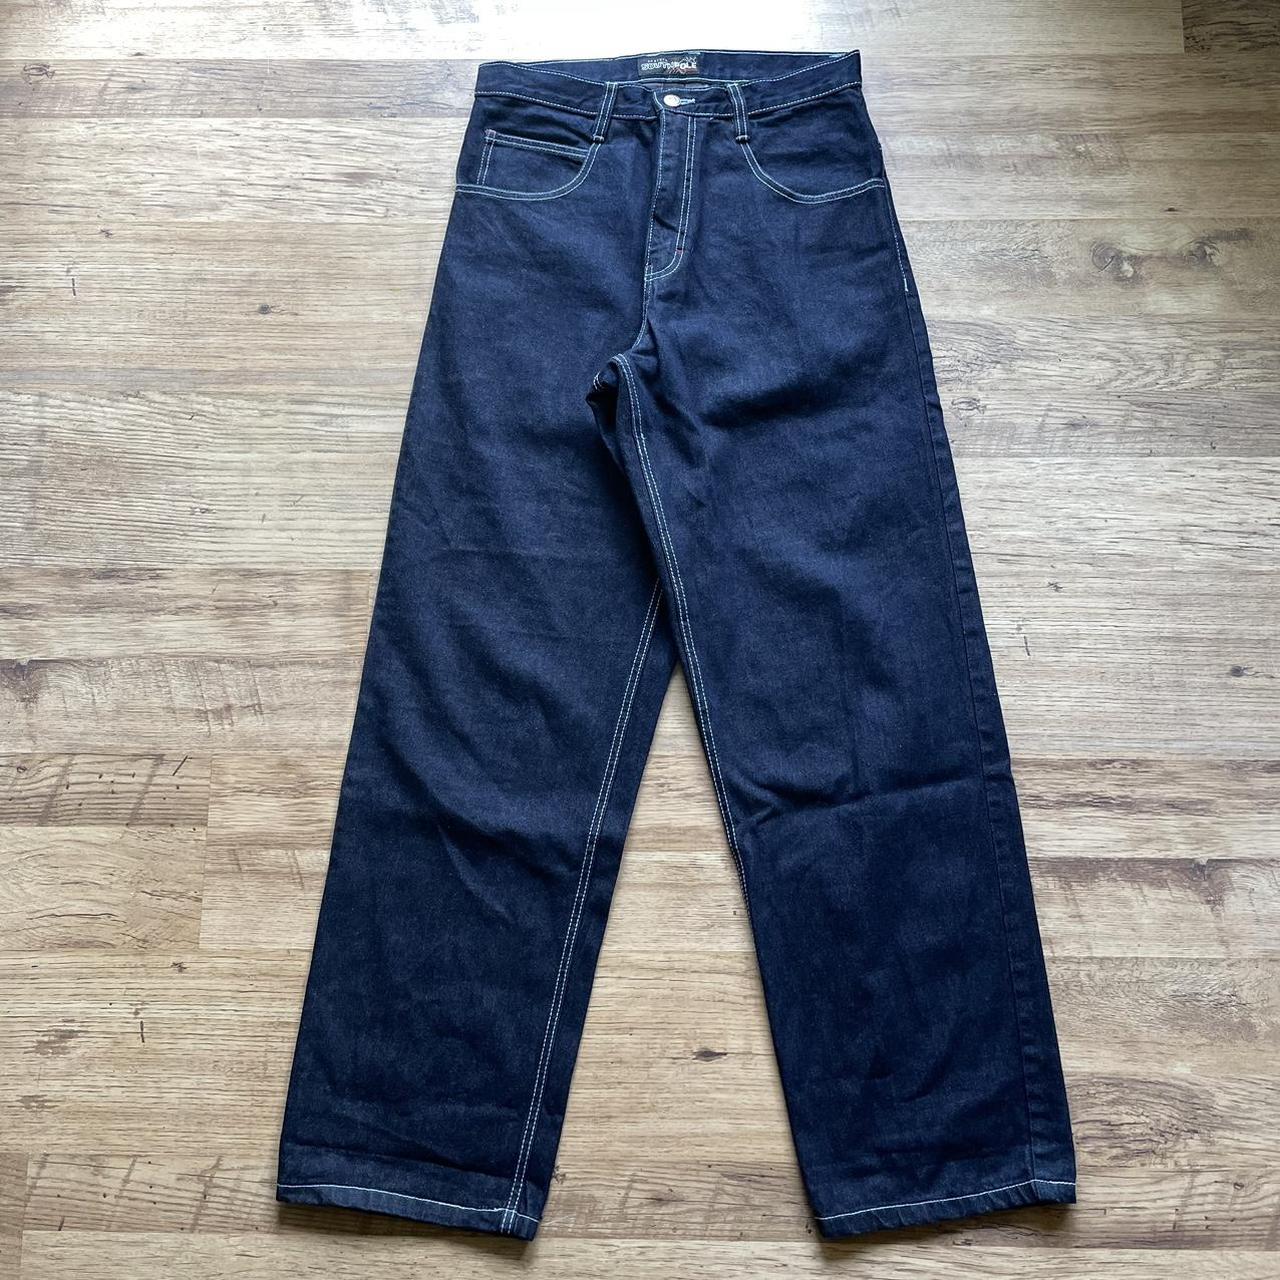 Southpole Men's Navy Jeans | Depop